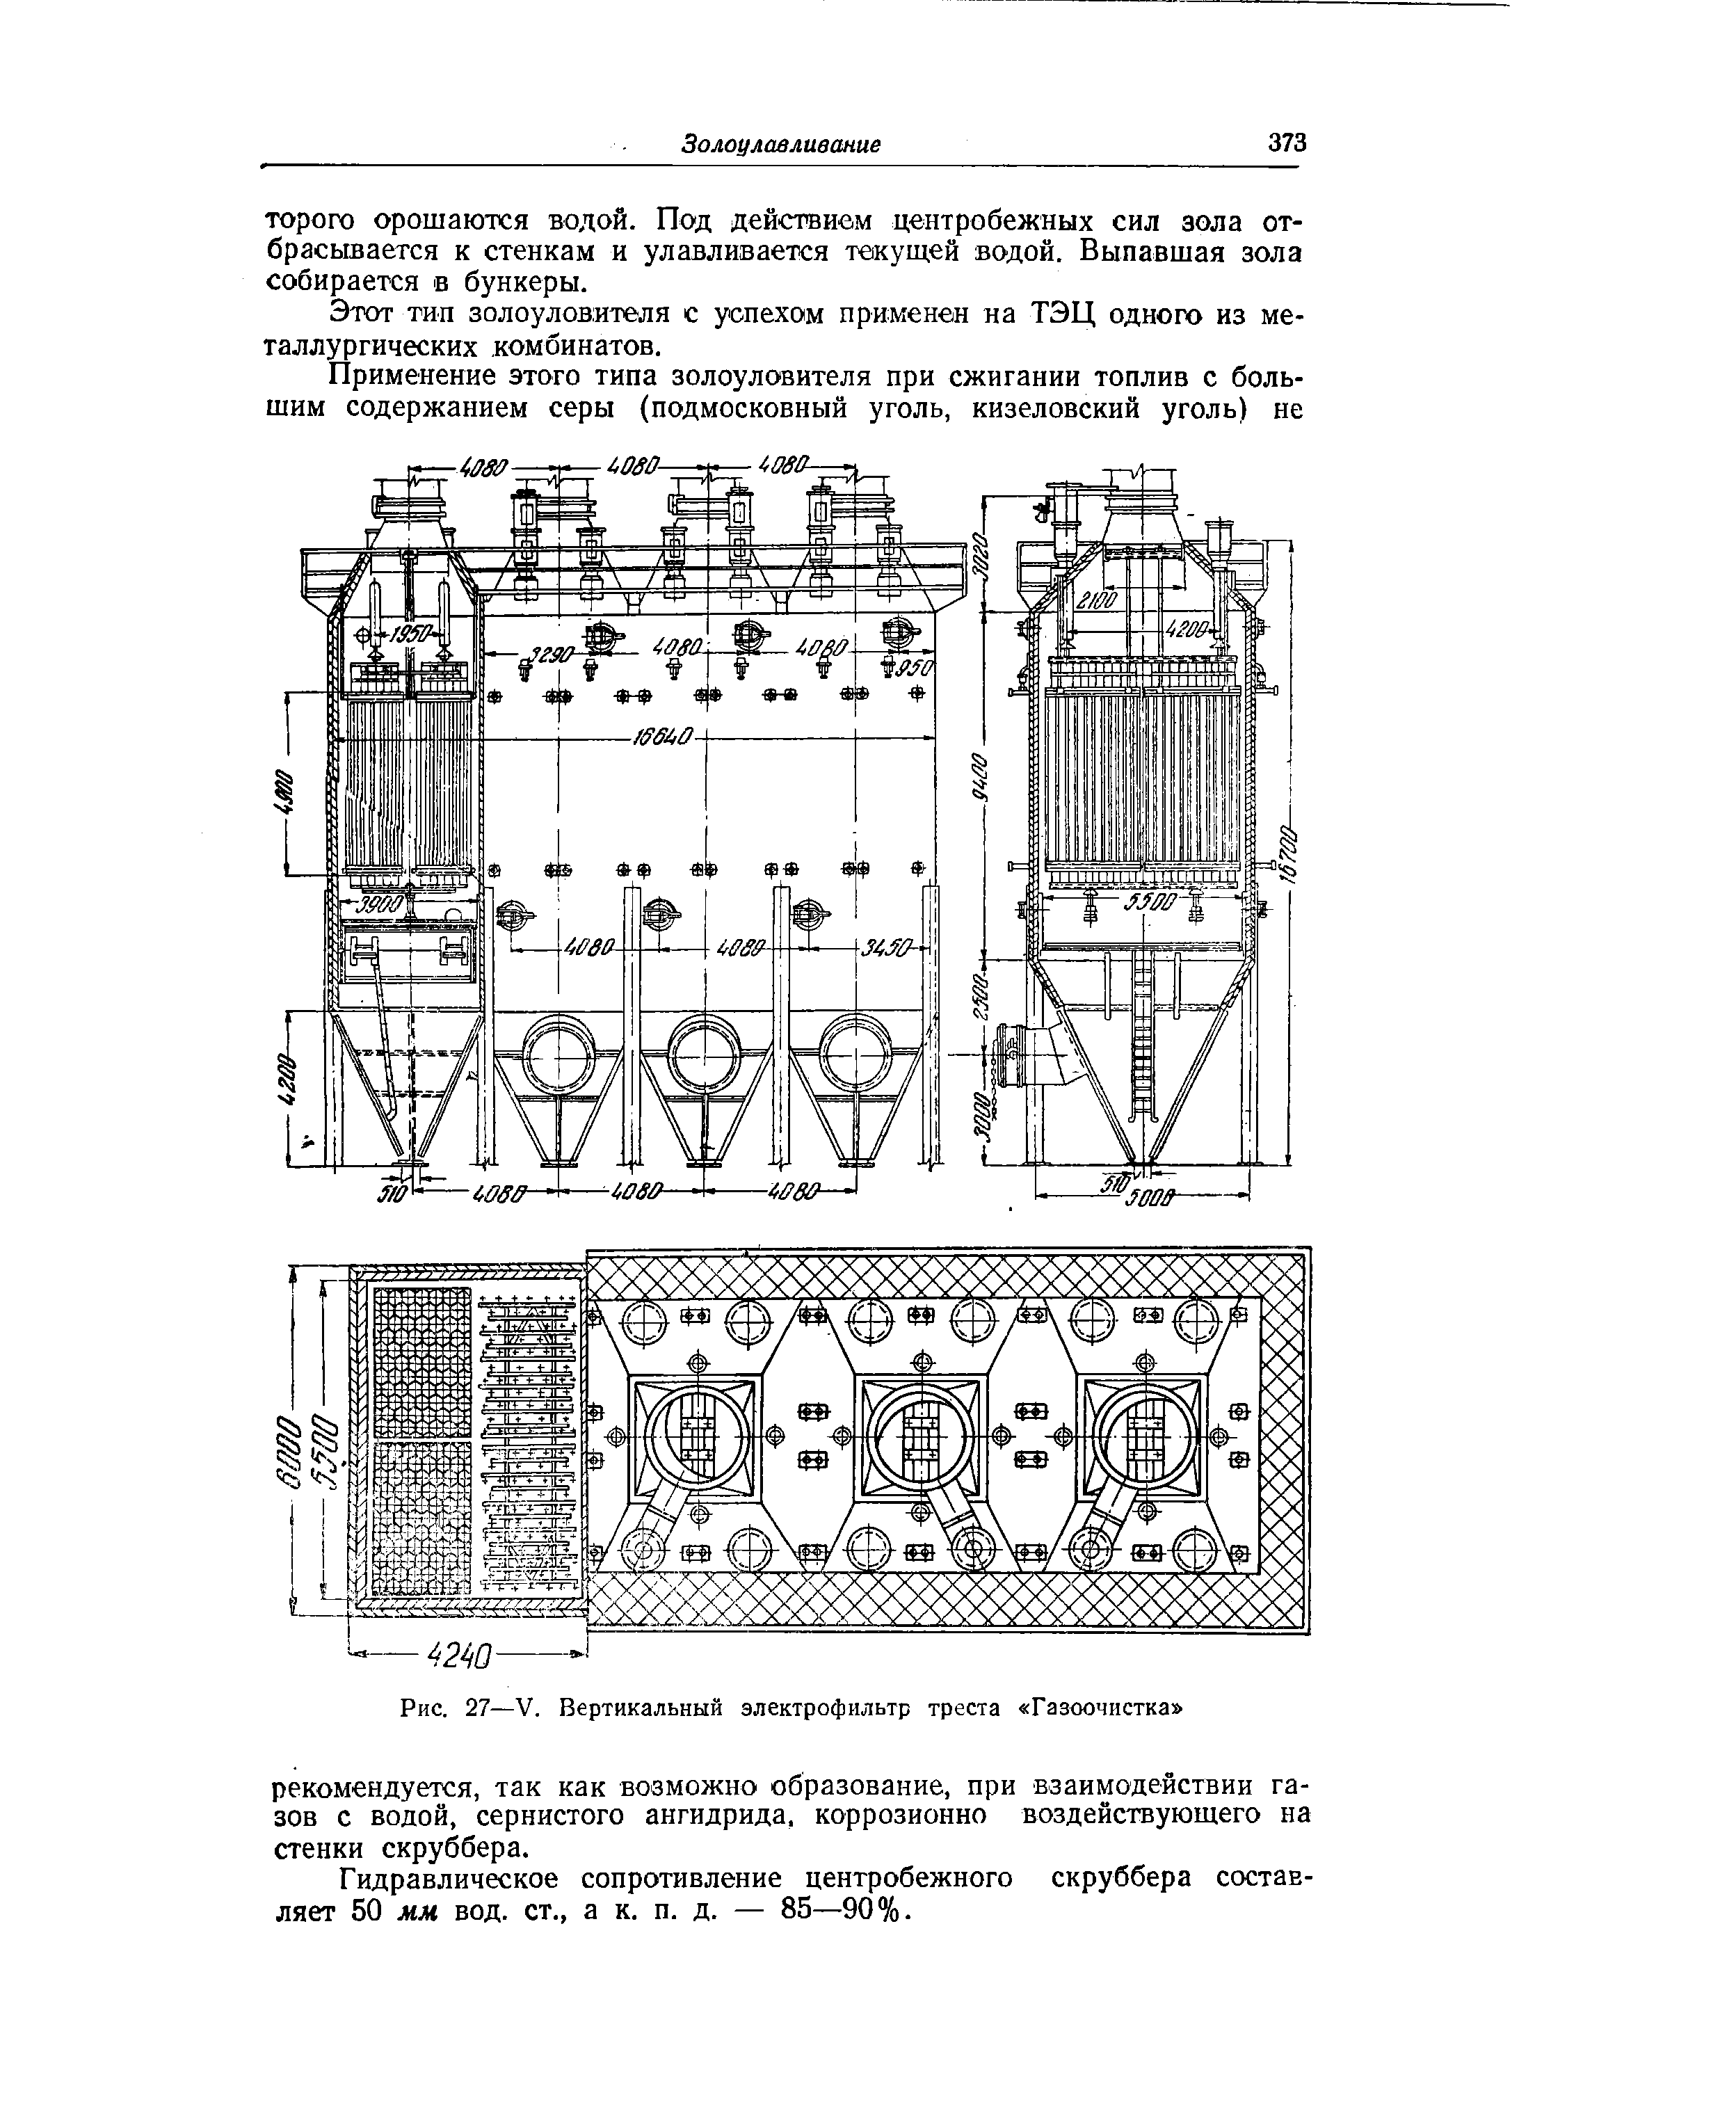 Рис. 27—V. Вертикальный электрофильтр треста Газоочистка 
